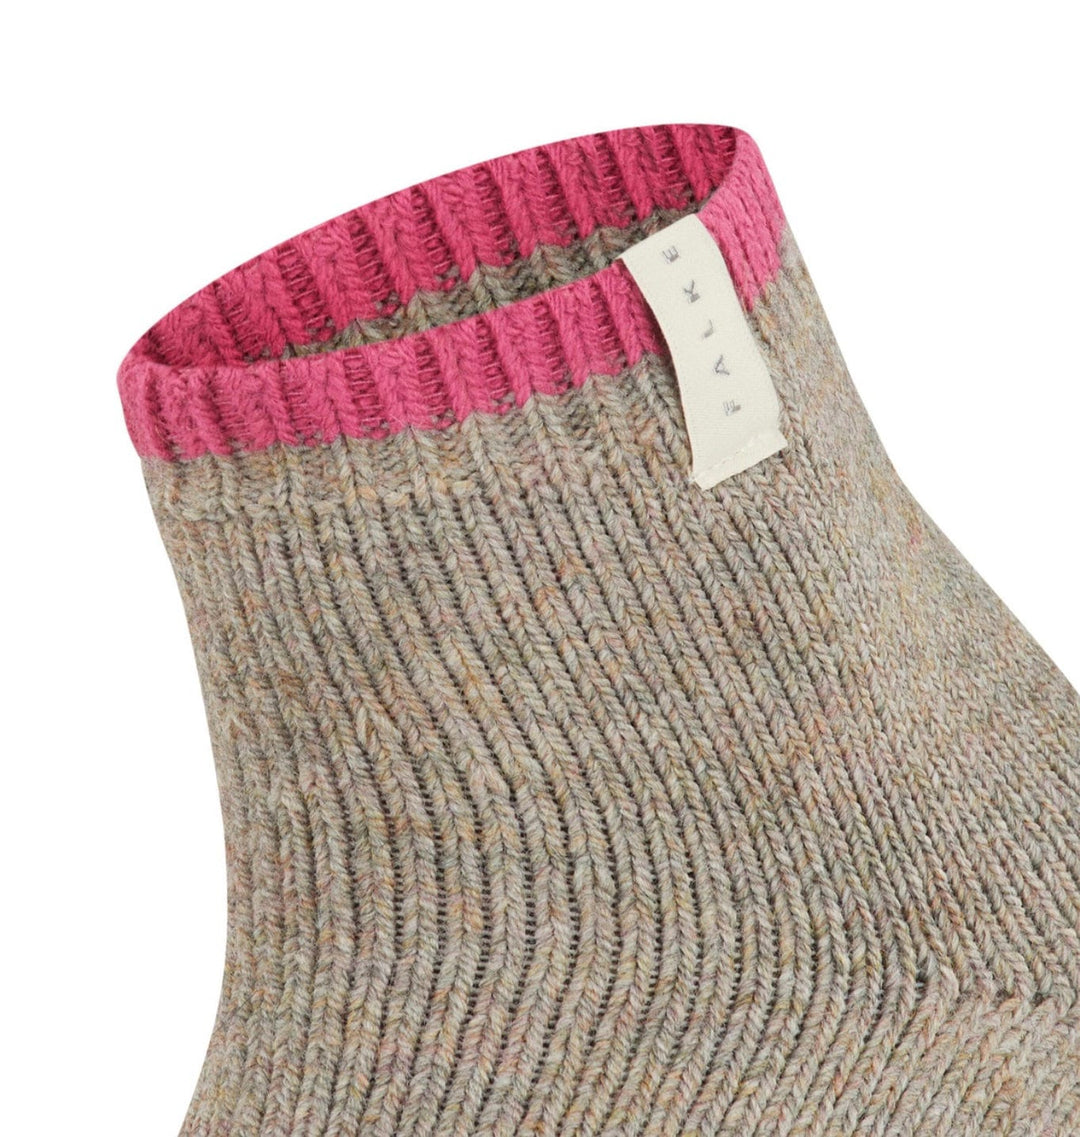 Falke Nut.mel / 35-38 (5-7.5) FALKE Cosy Plush Women Socks